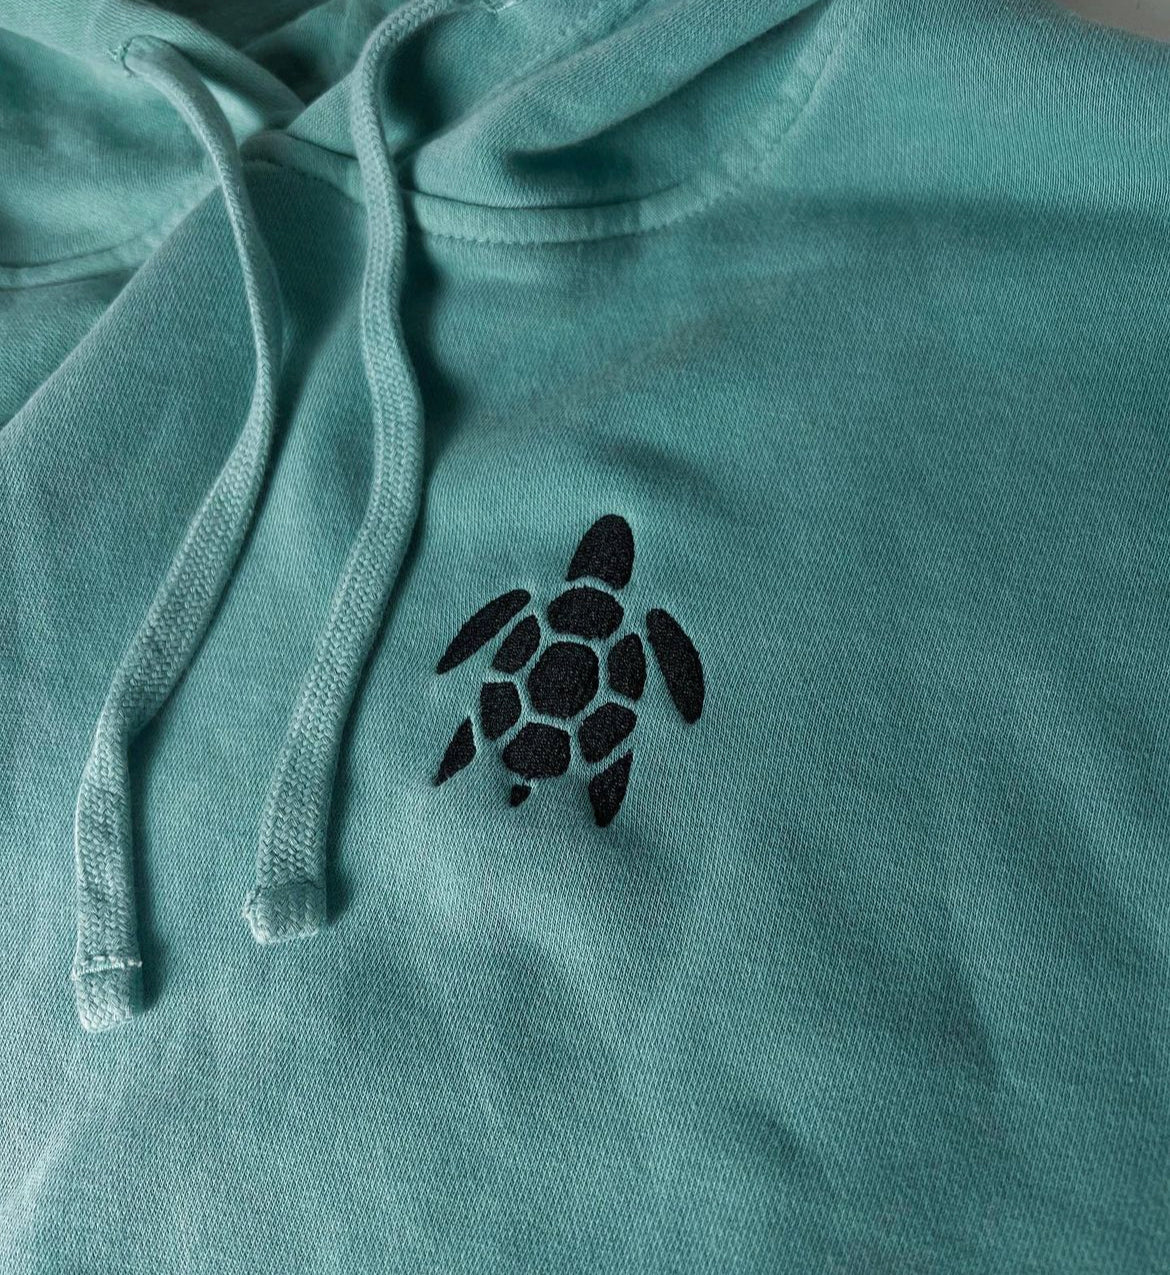 Unisex teal turtle hoodie